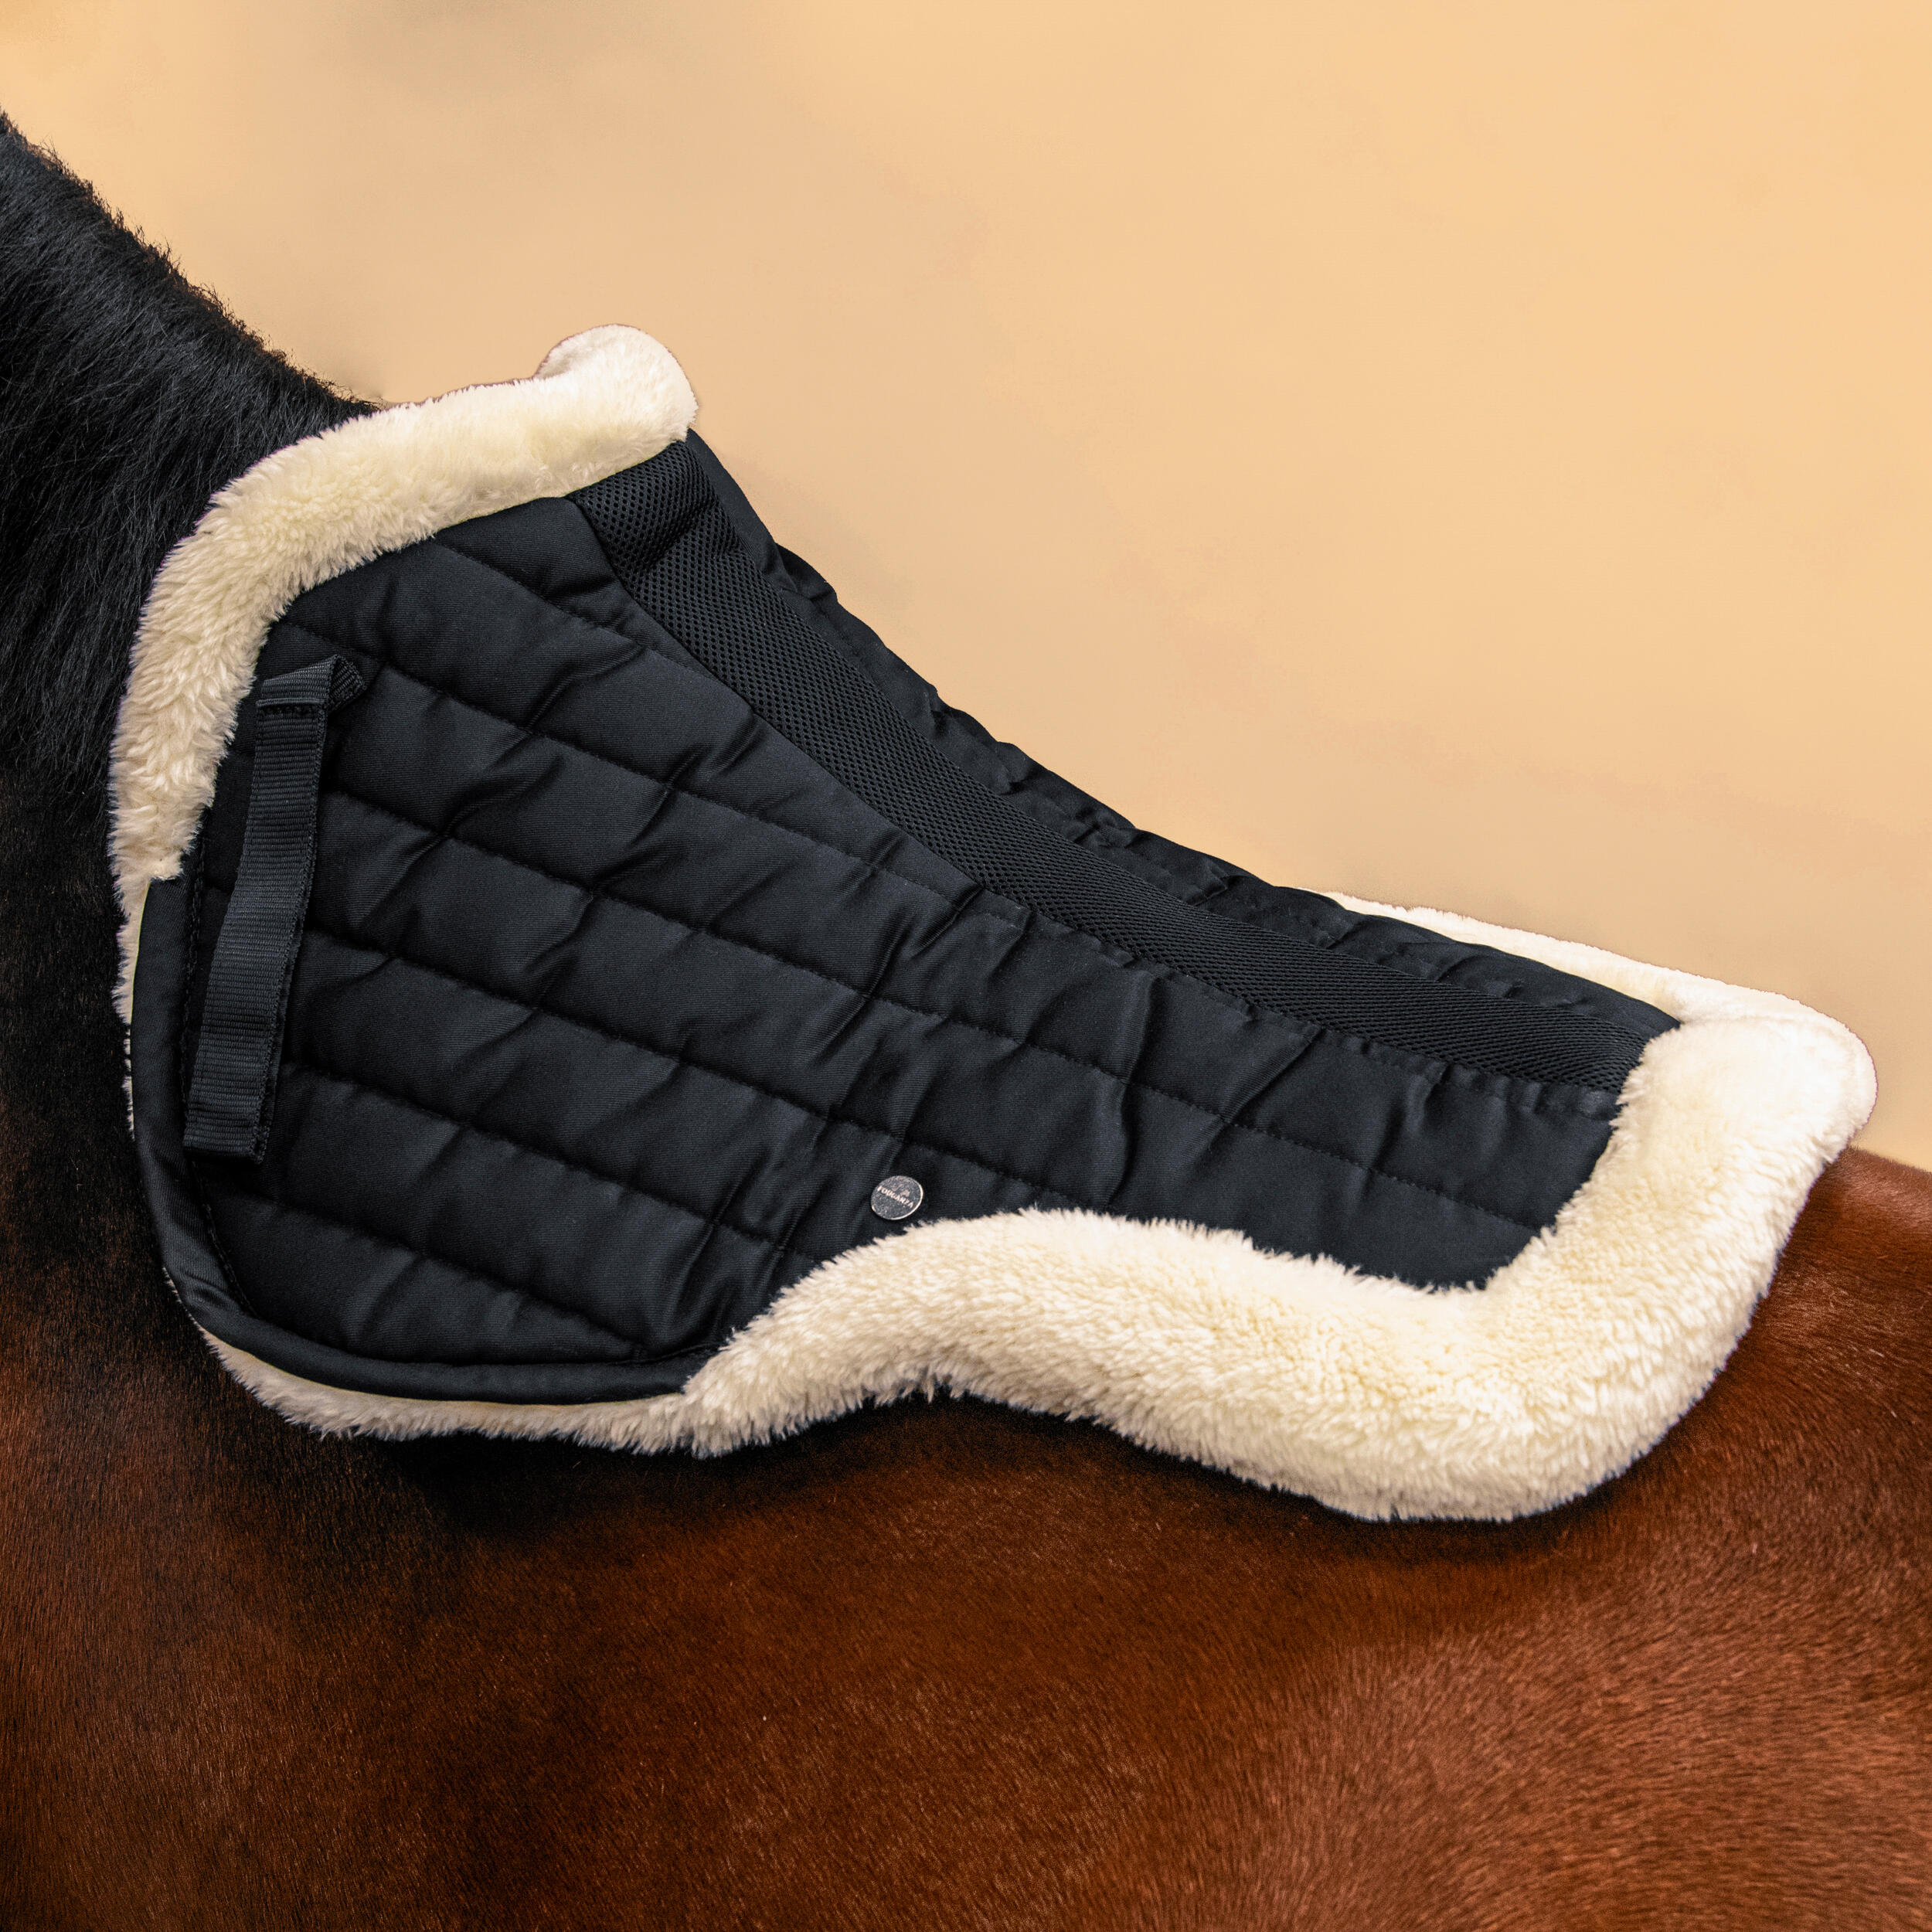 Amortisseur d'équitation pour cheval en mouton synthétique - 900 noir - FOUGANZA